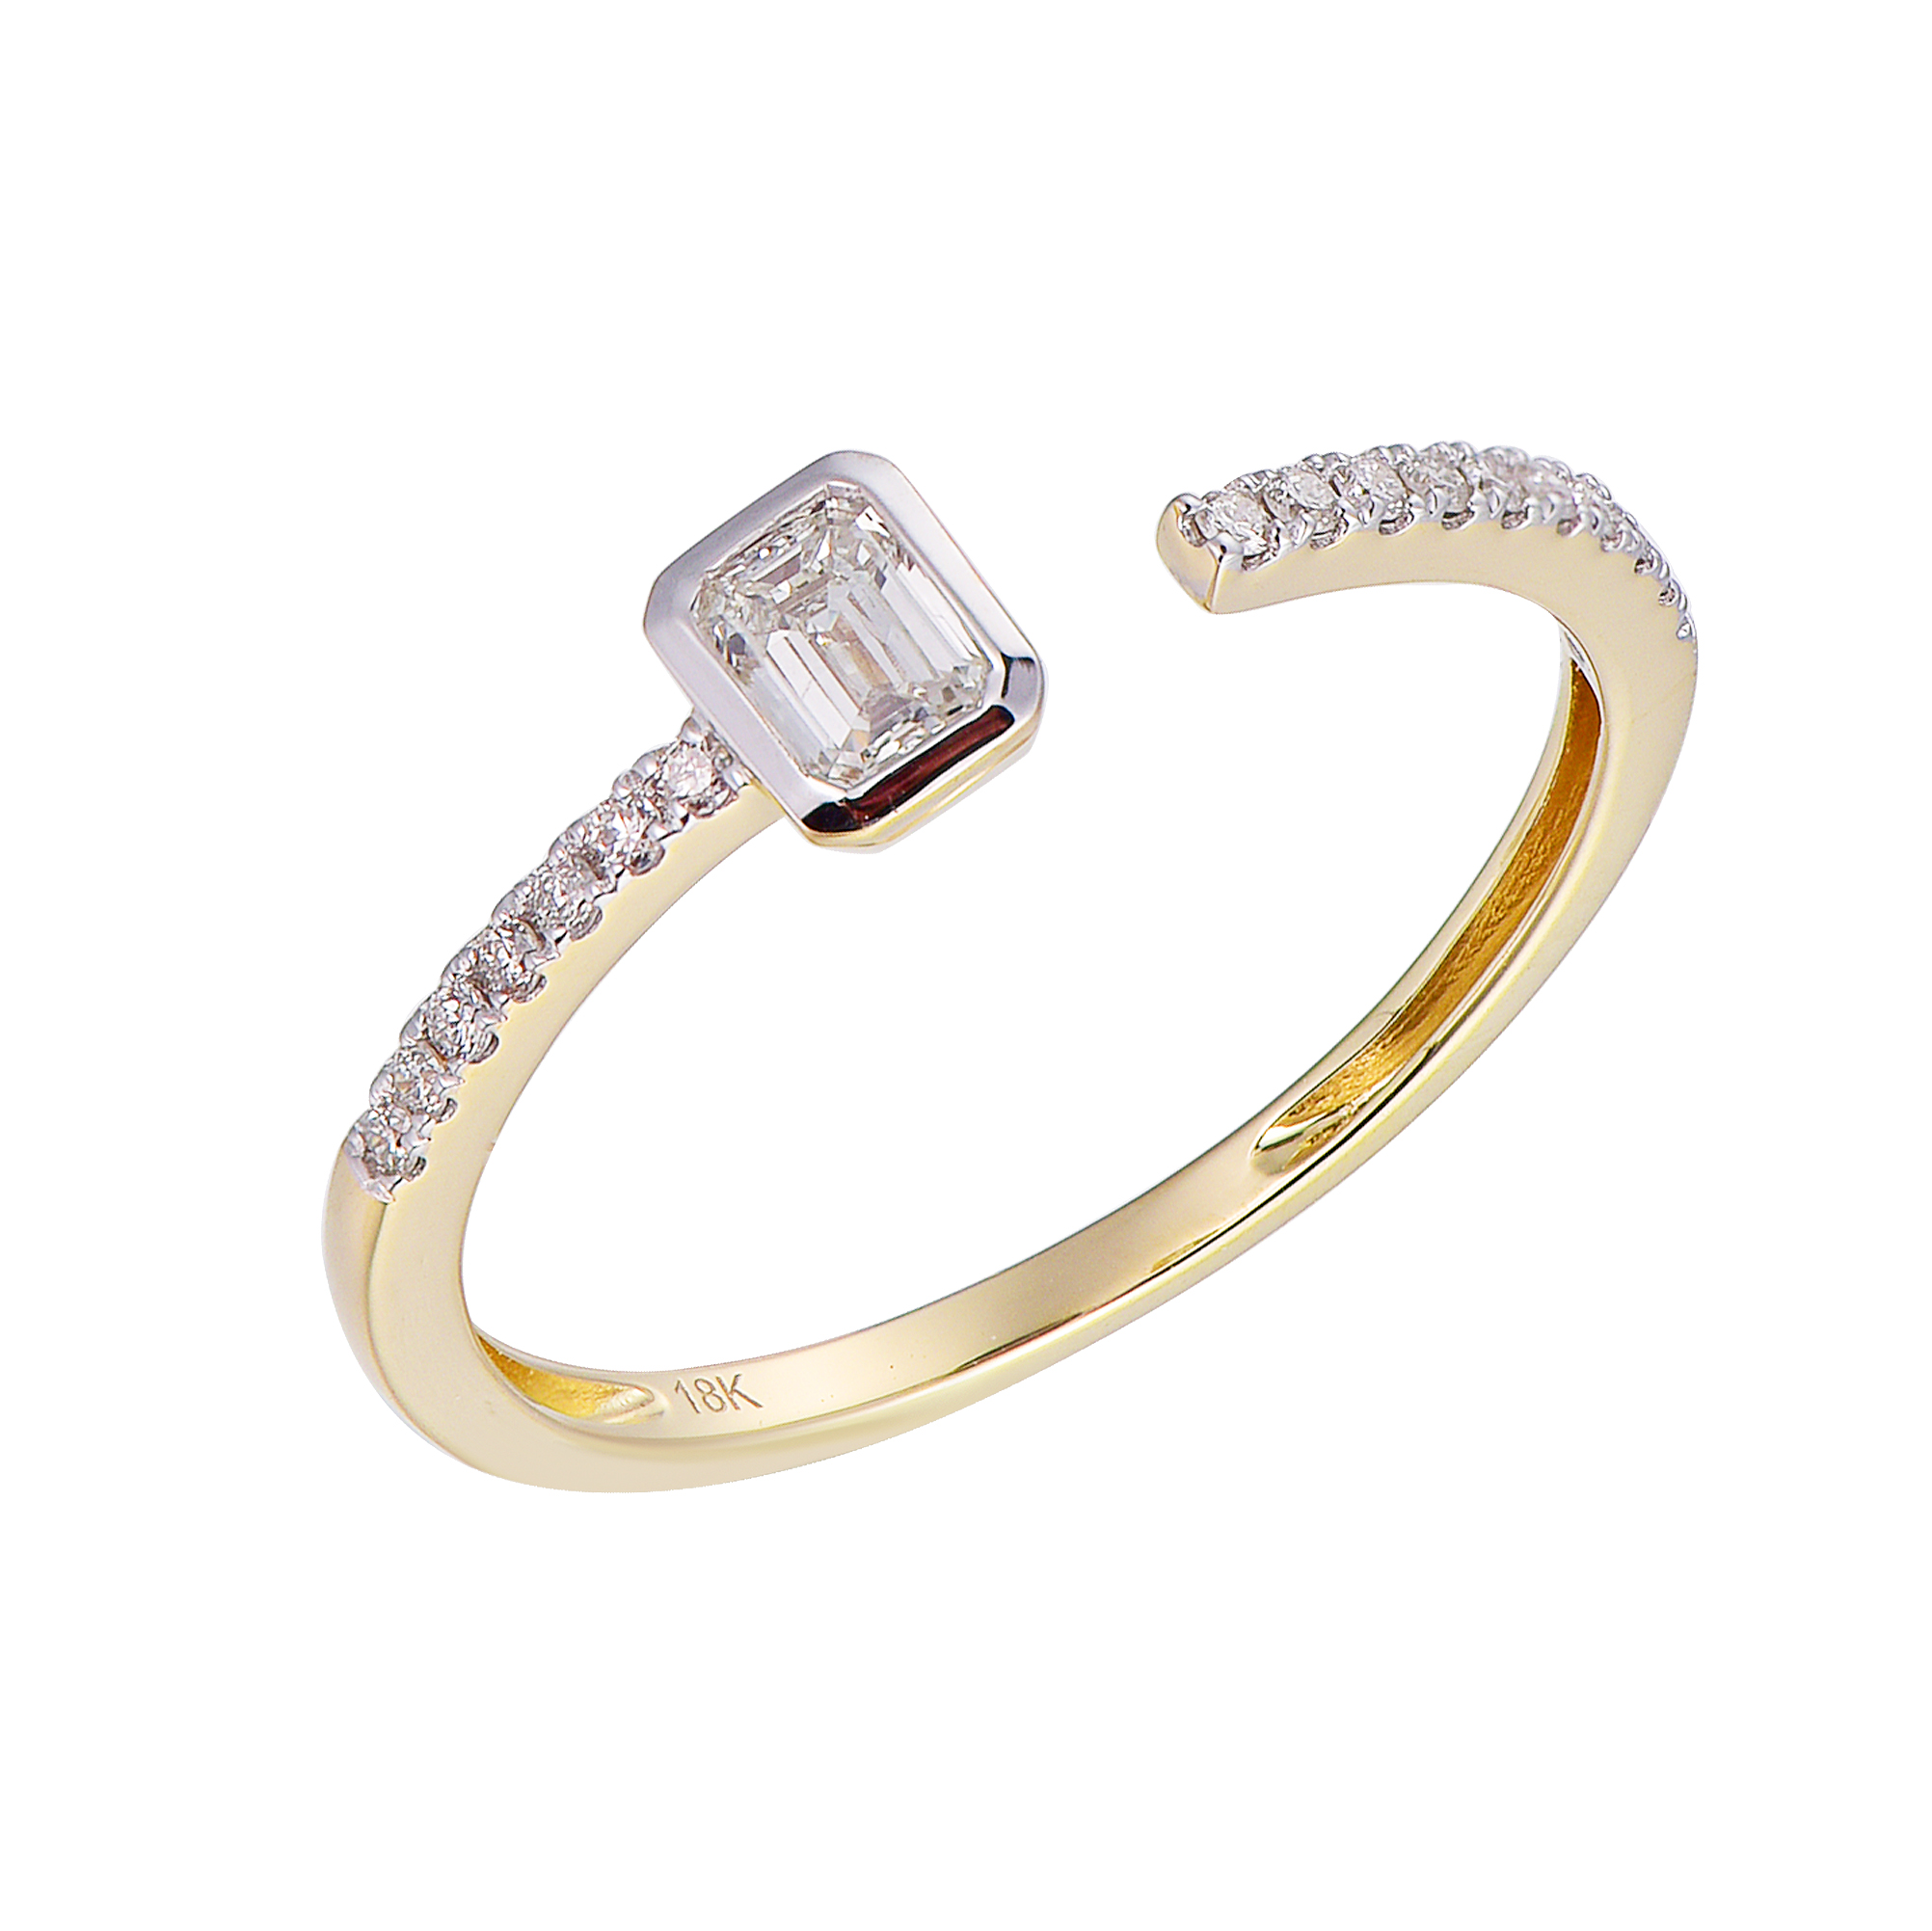 DI44628R 18K yellow gold baguette diamond ring